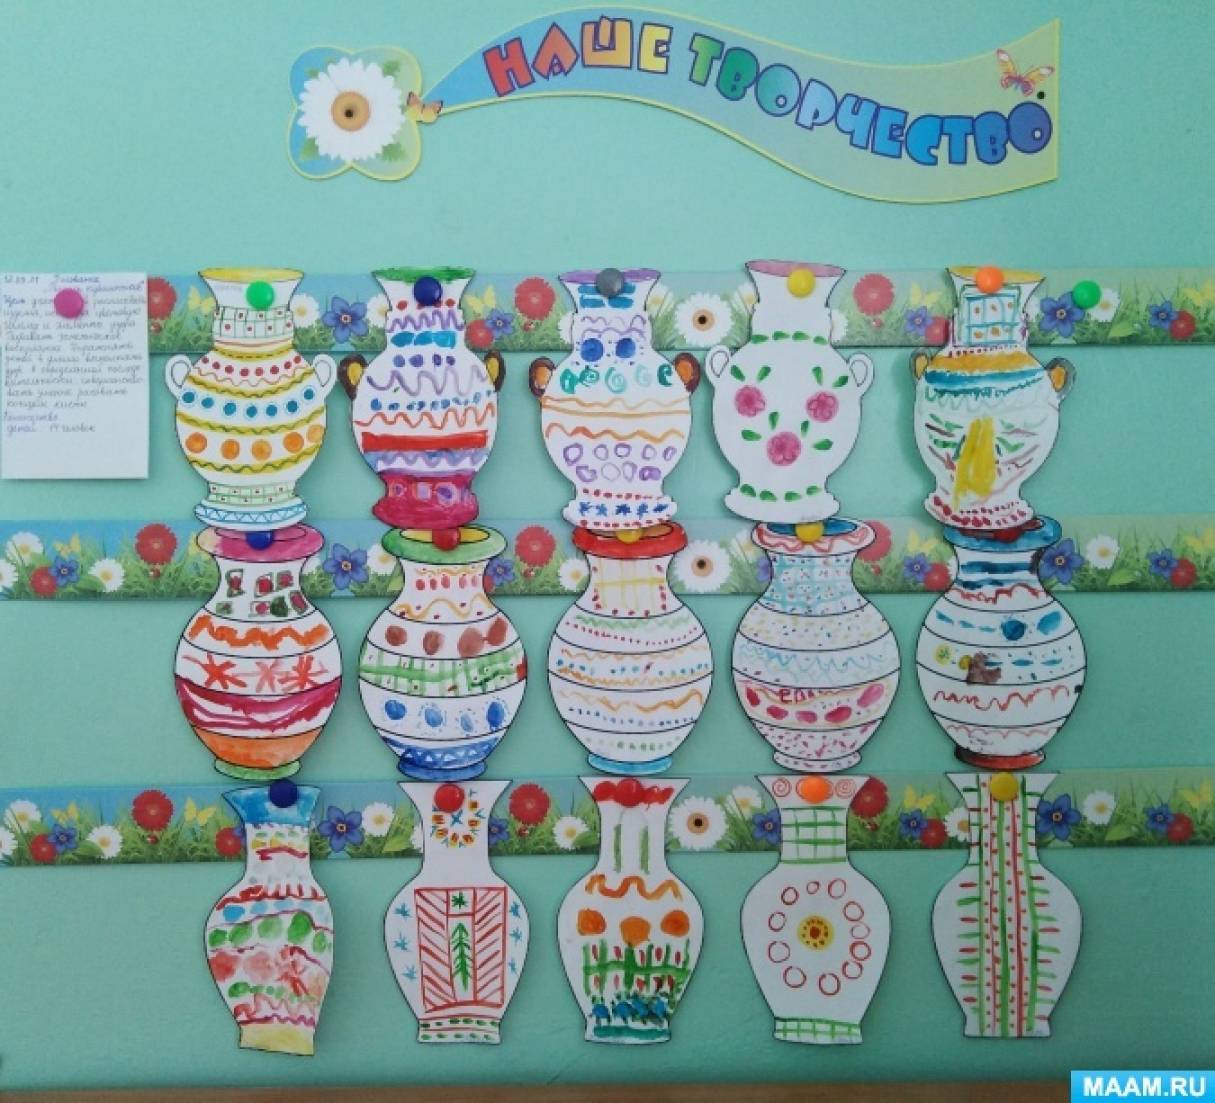 Мастер классы в Нижнем Новгороде для детей и взрослых: цены, идеи, заказ